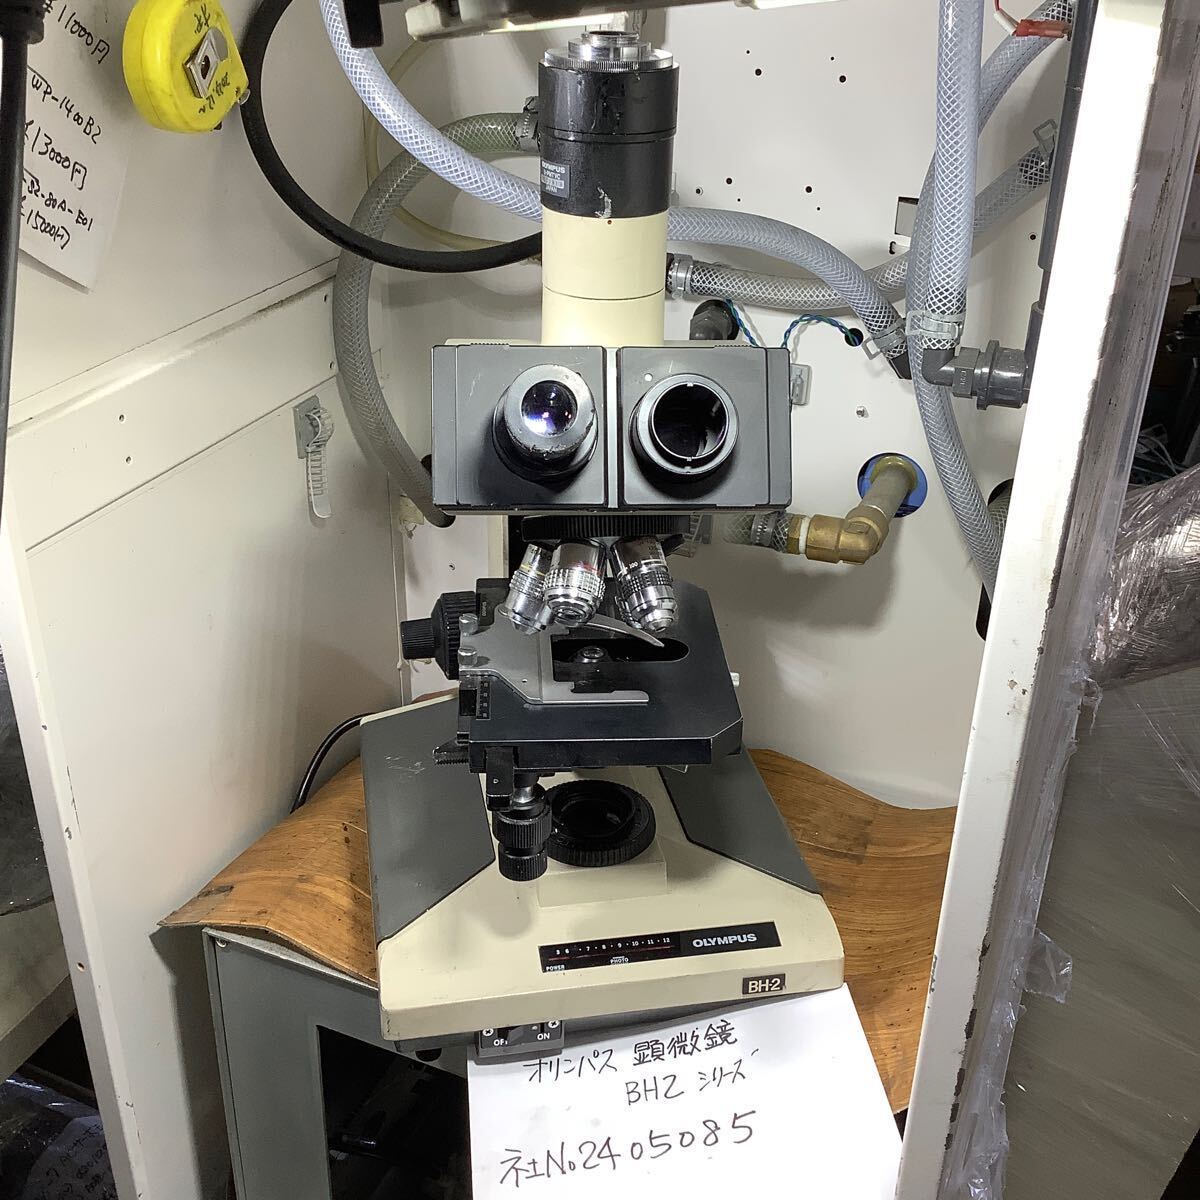 オリンパス BH2シリーズ顕微鏡 中古品一般的な通電まで済みです。注意ランプ切れその他キズパーツカケ有り品です。(現状渡し品です。)の画像1